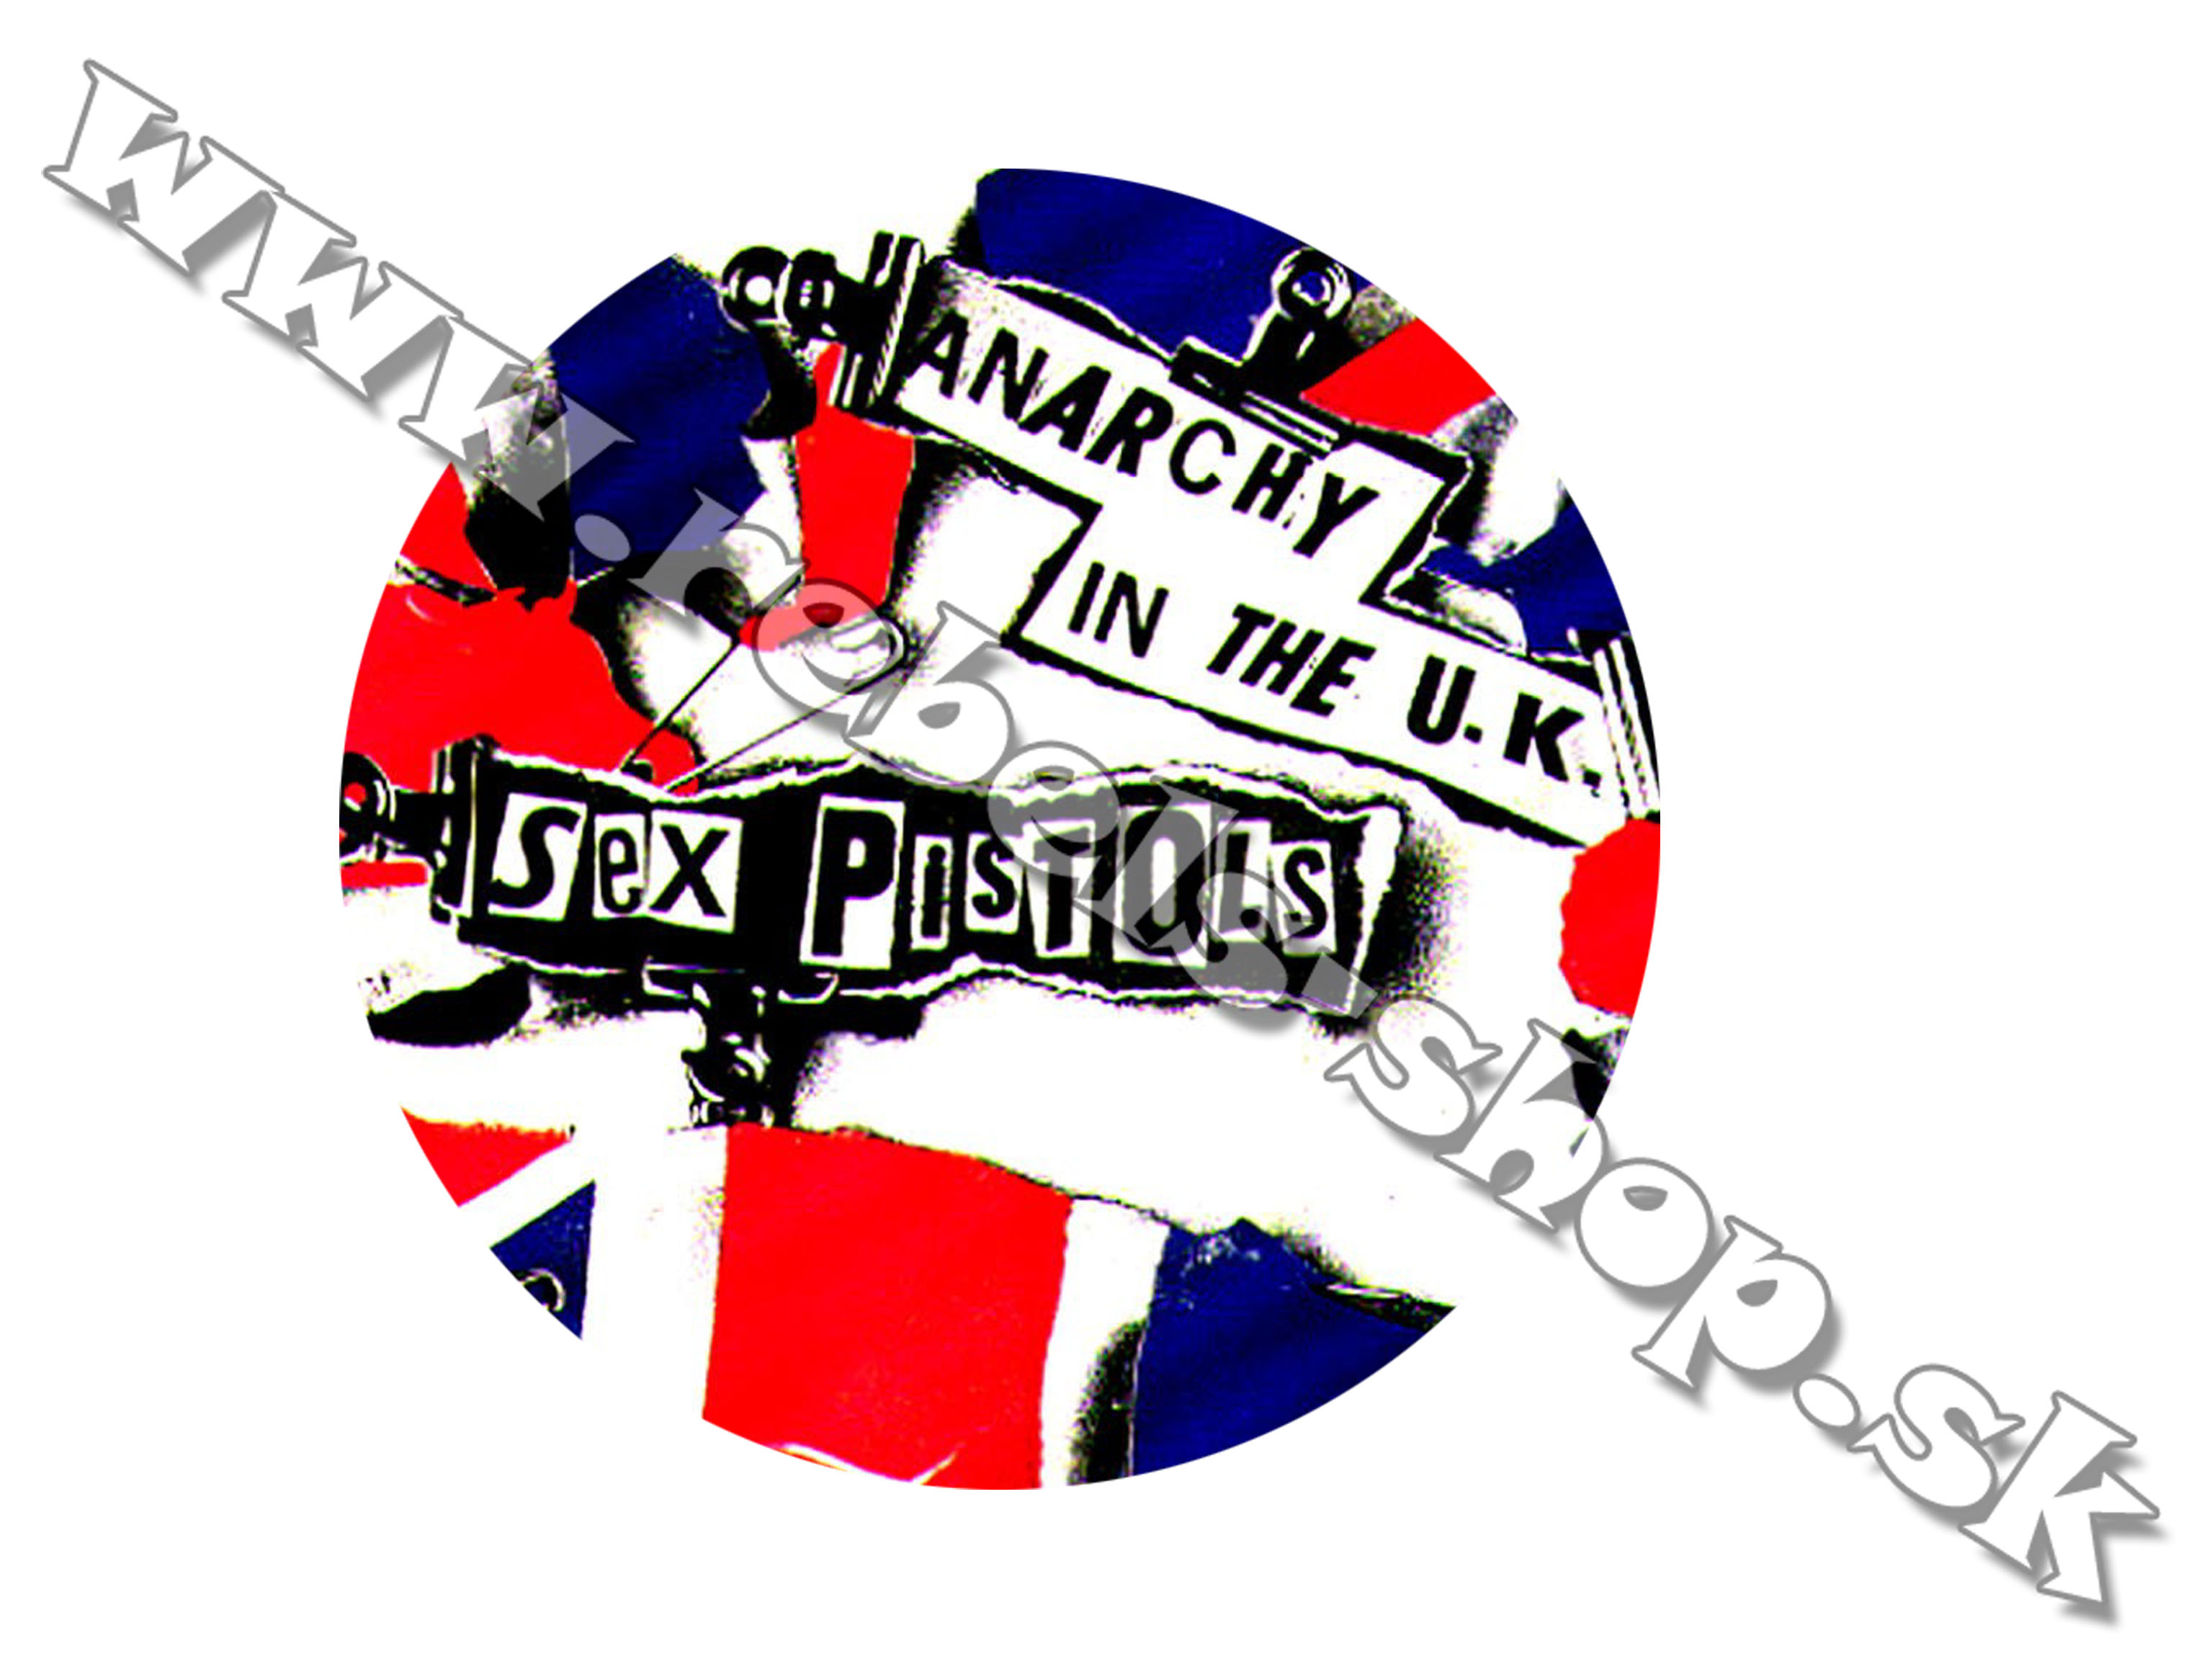 Odznak "Sex Pistols"